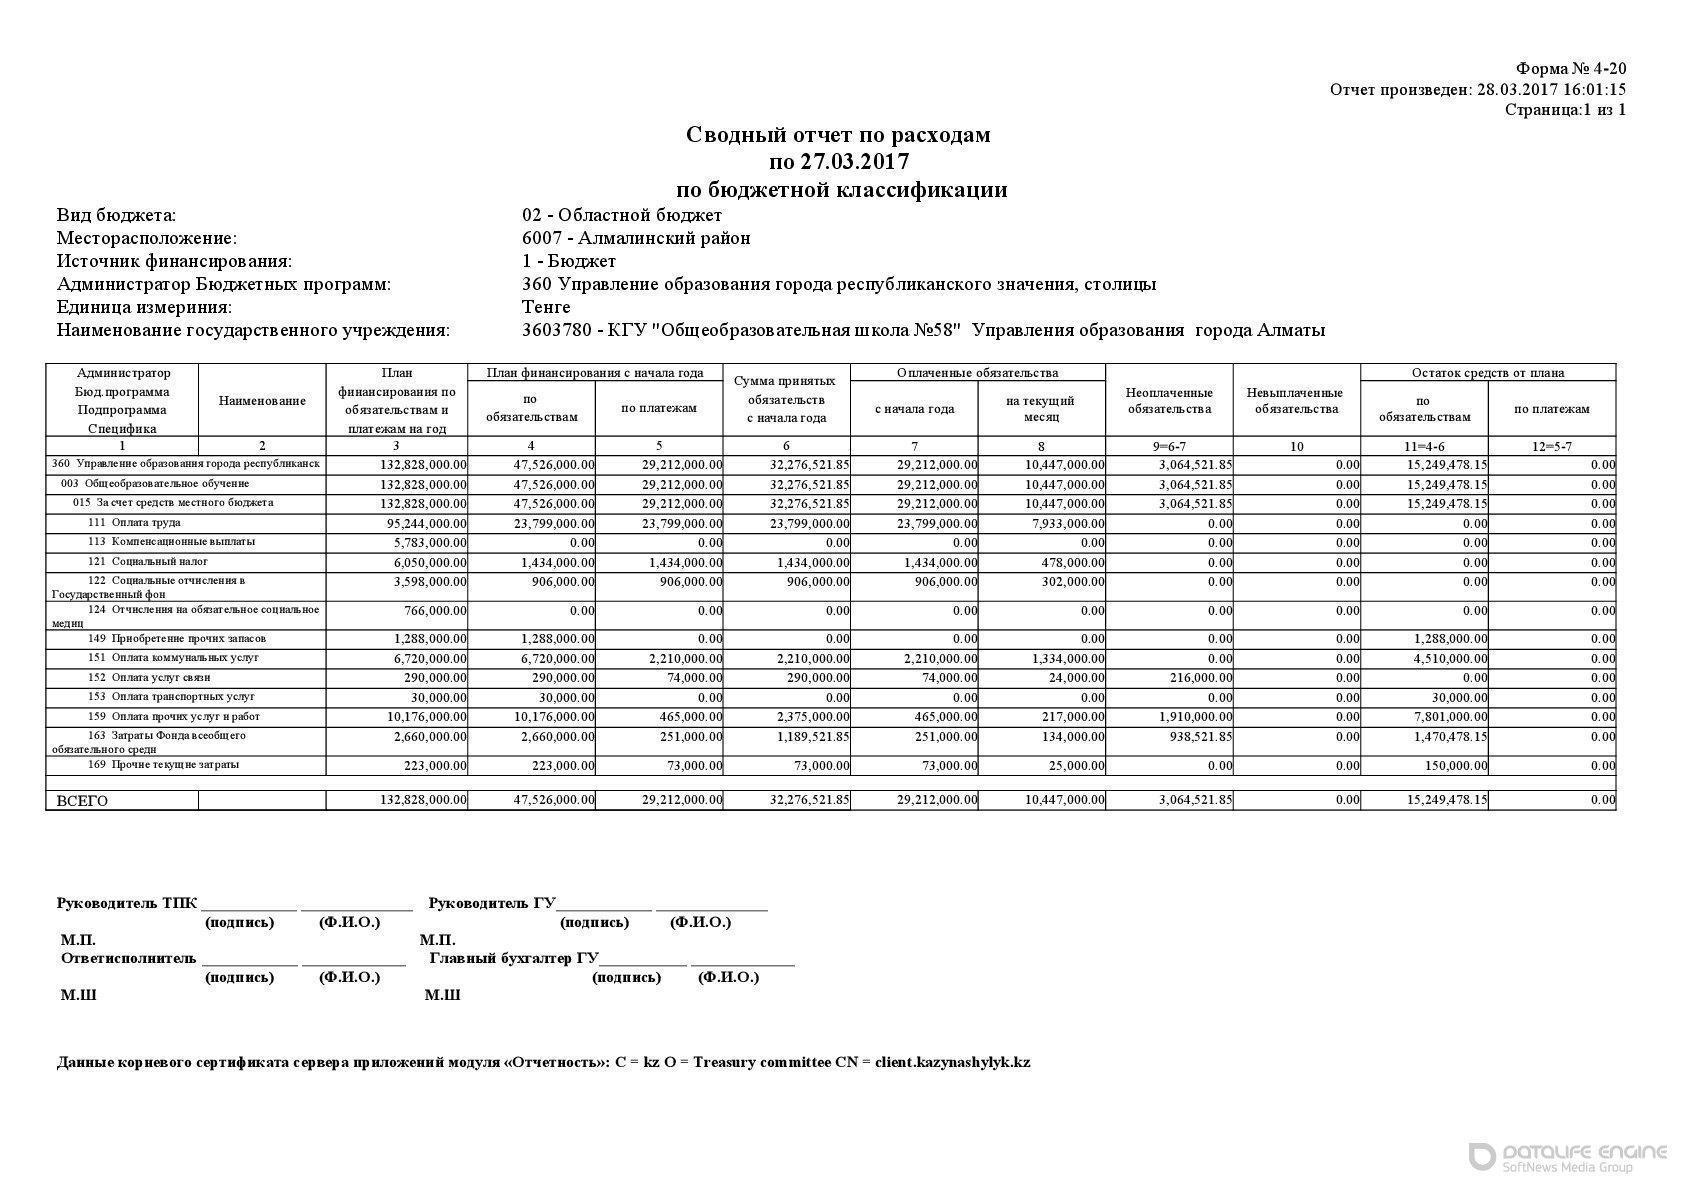 Сводный отчет по расходам по 27.03.2017 по бюджетной квалификации